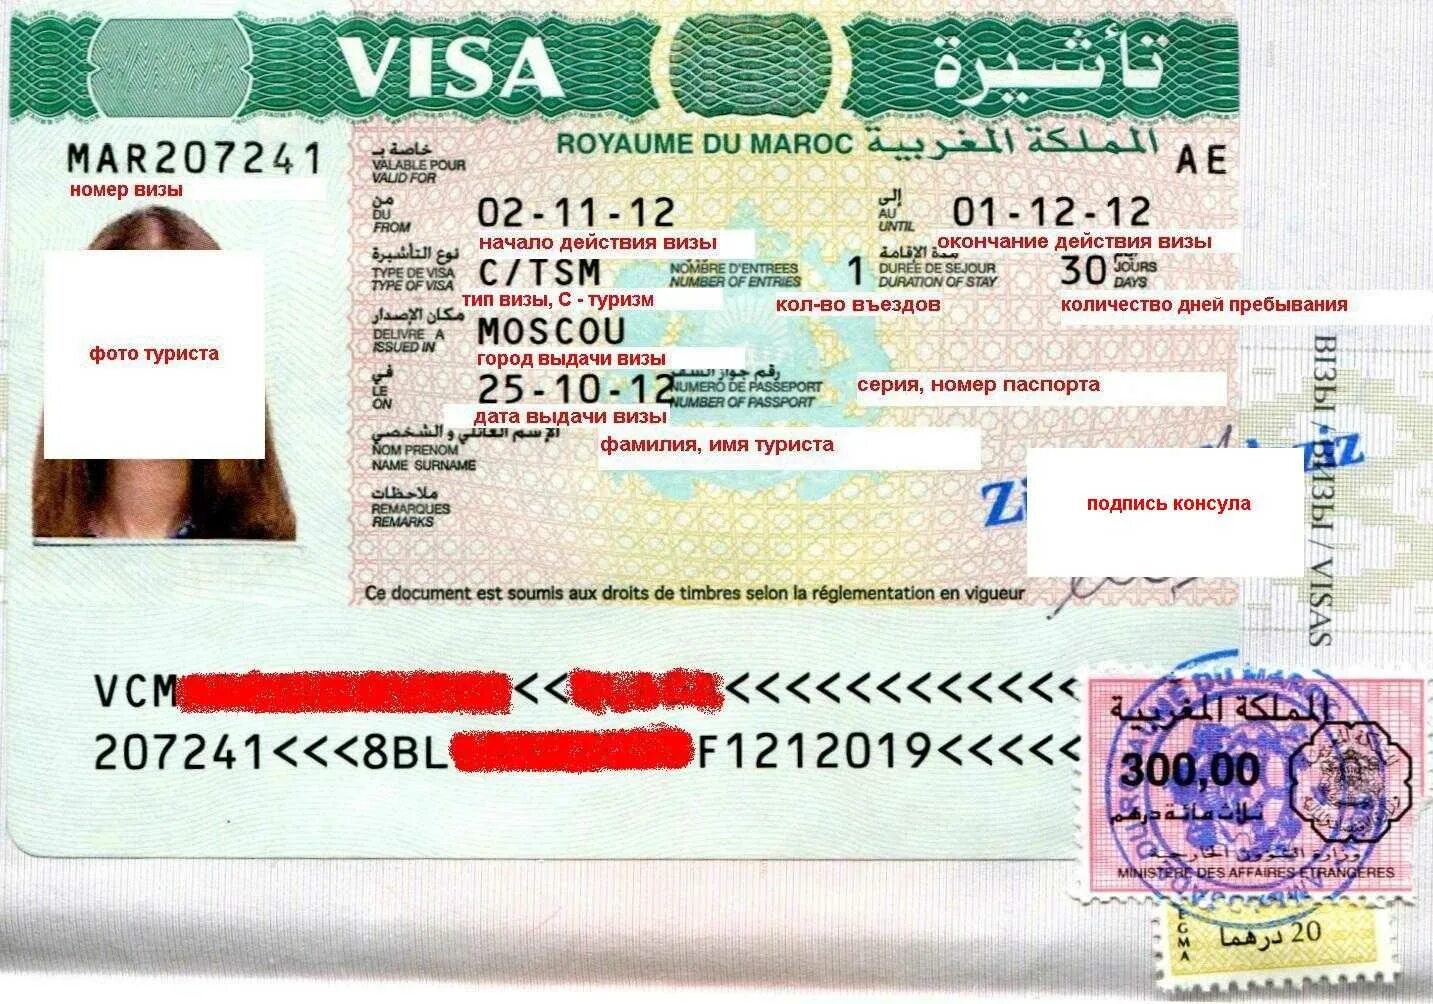 Виза. Долгосрочная виза. Туристическая виза. Марокко виза.